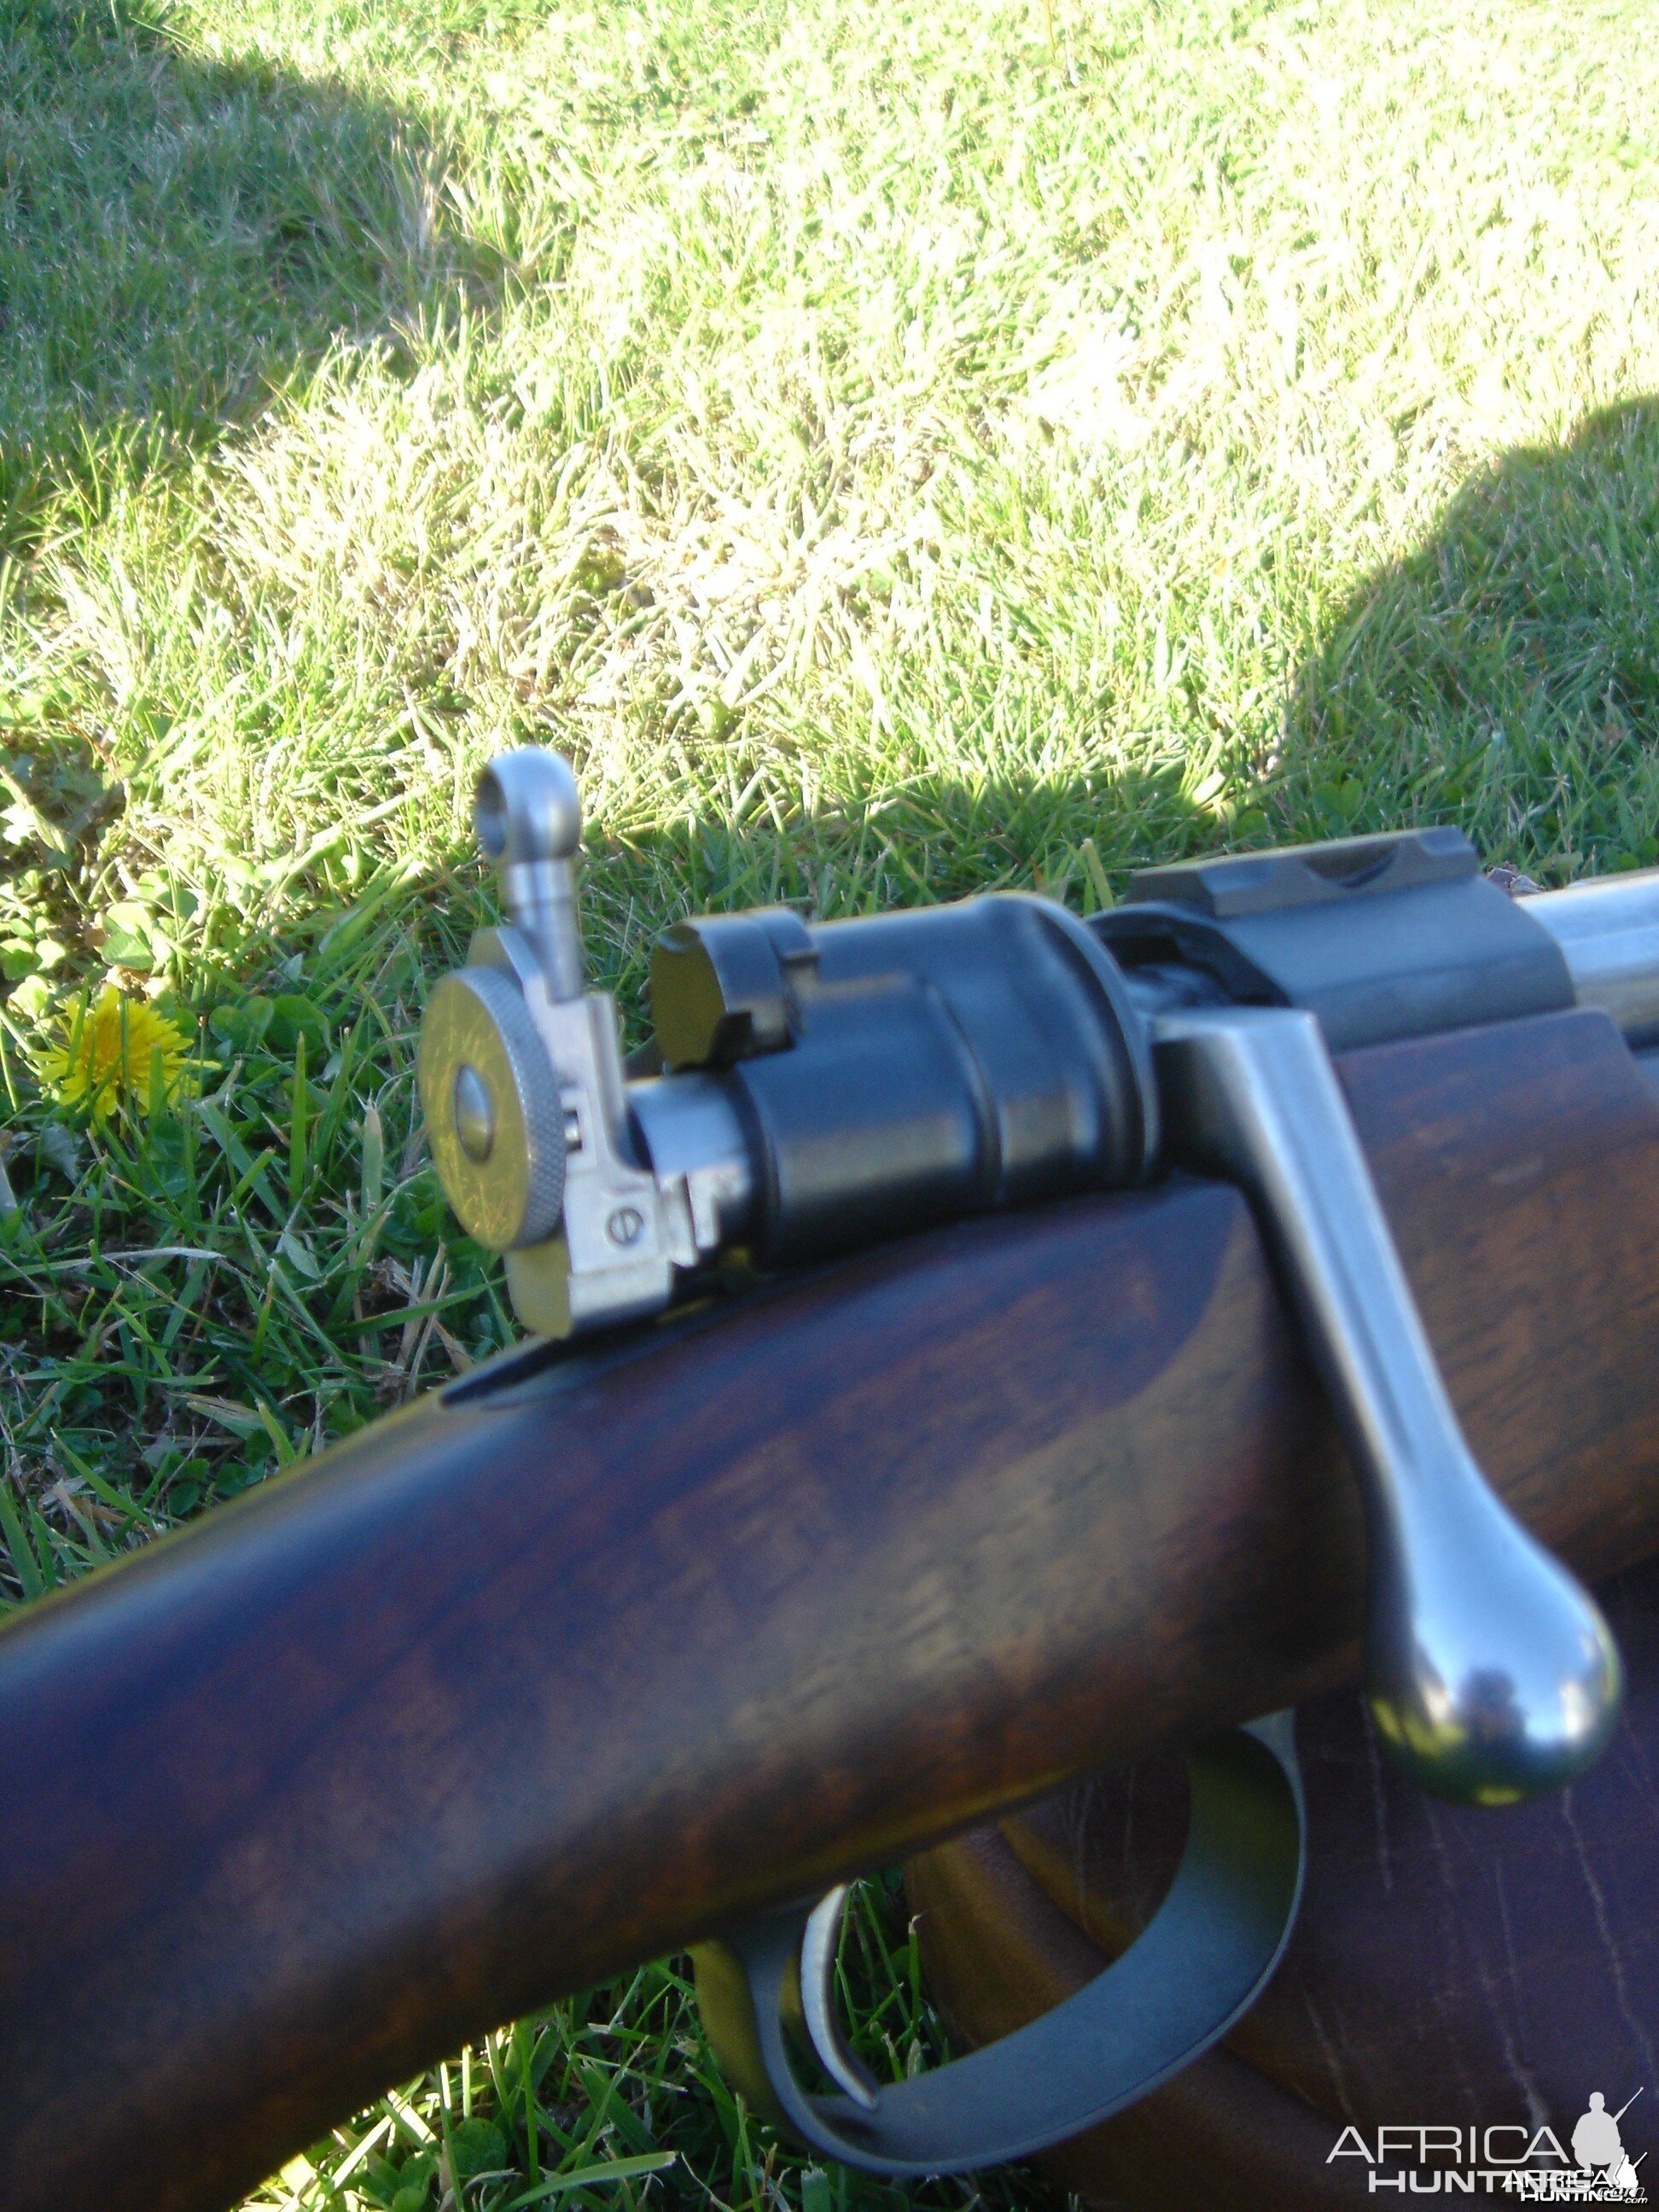 7x57 Stalking Rifle